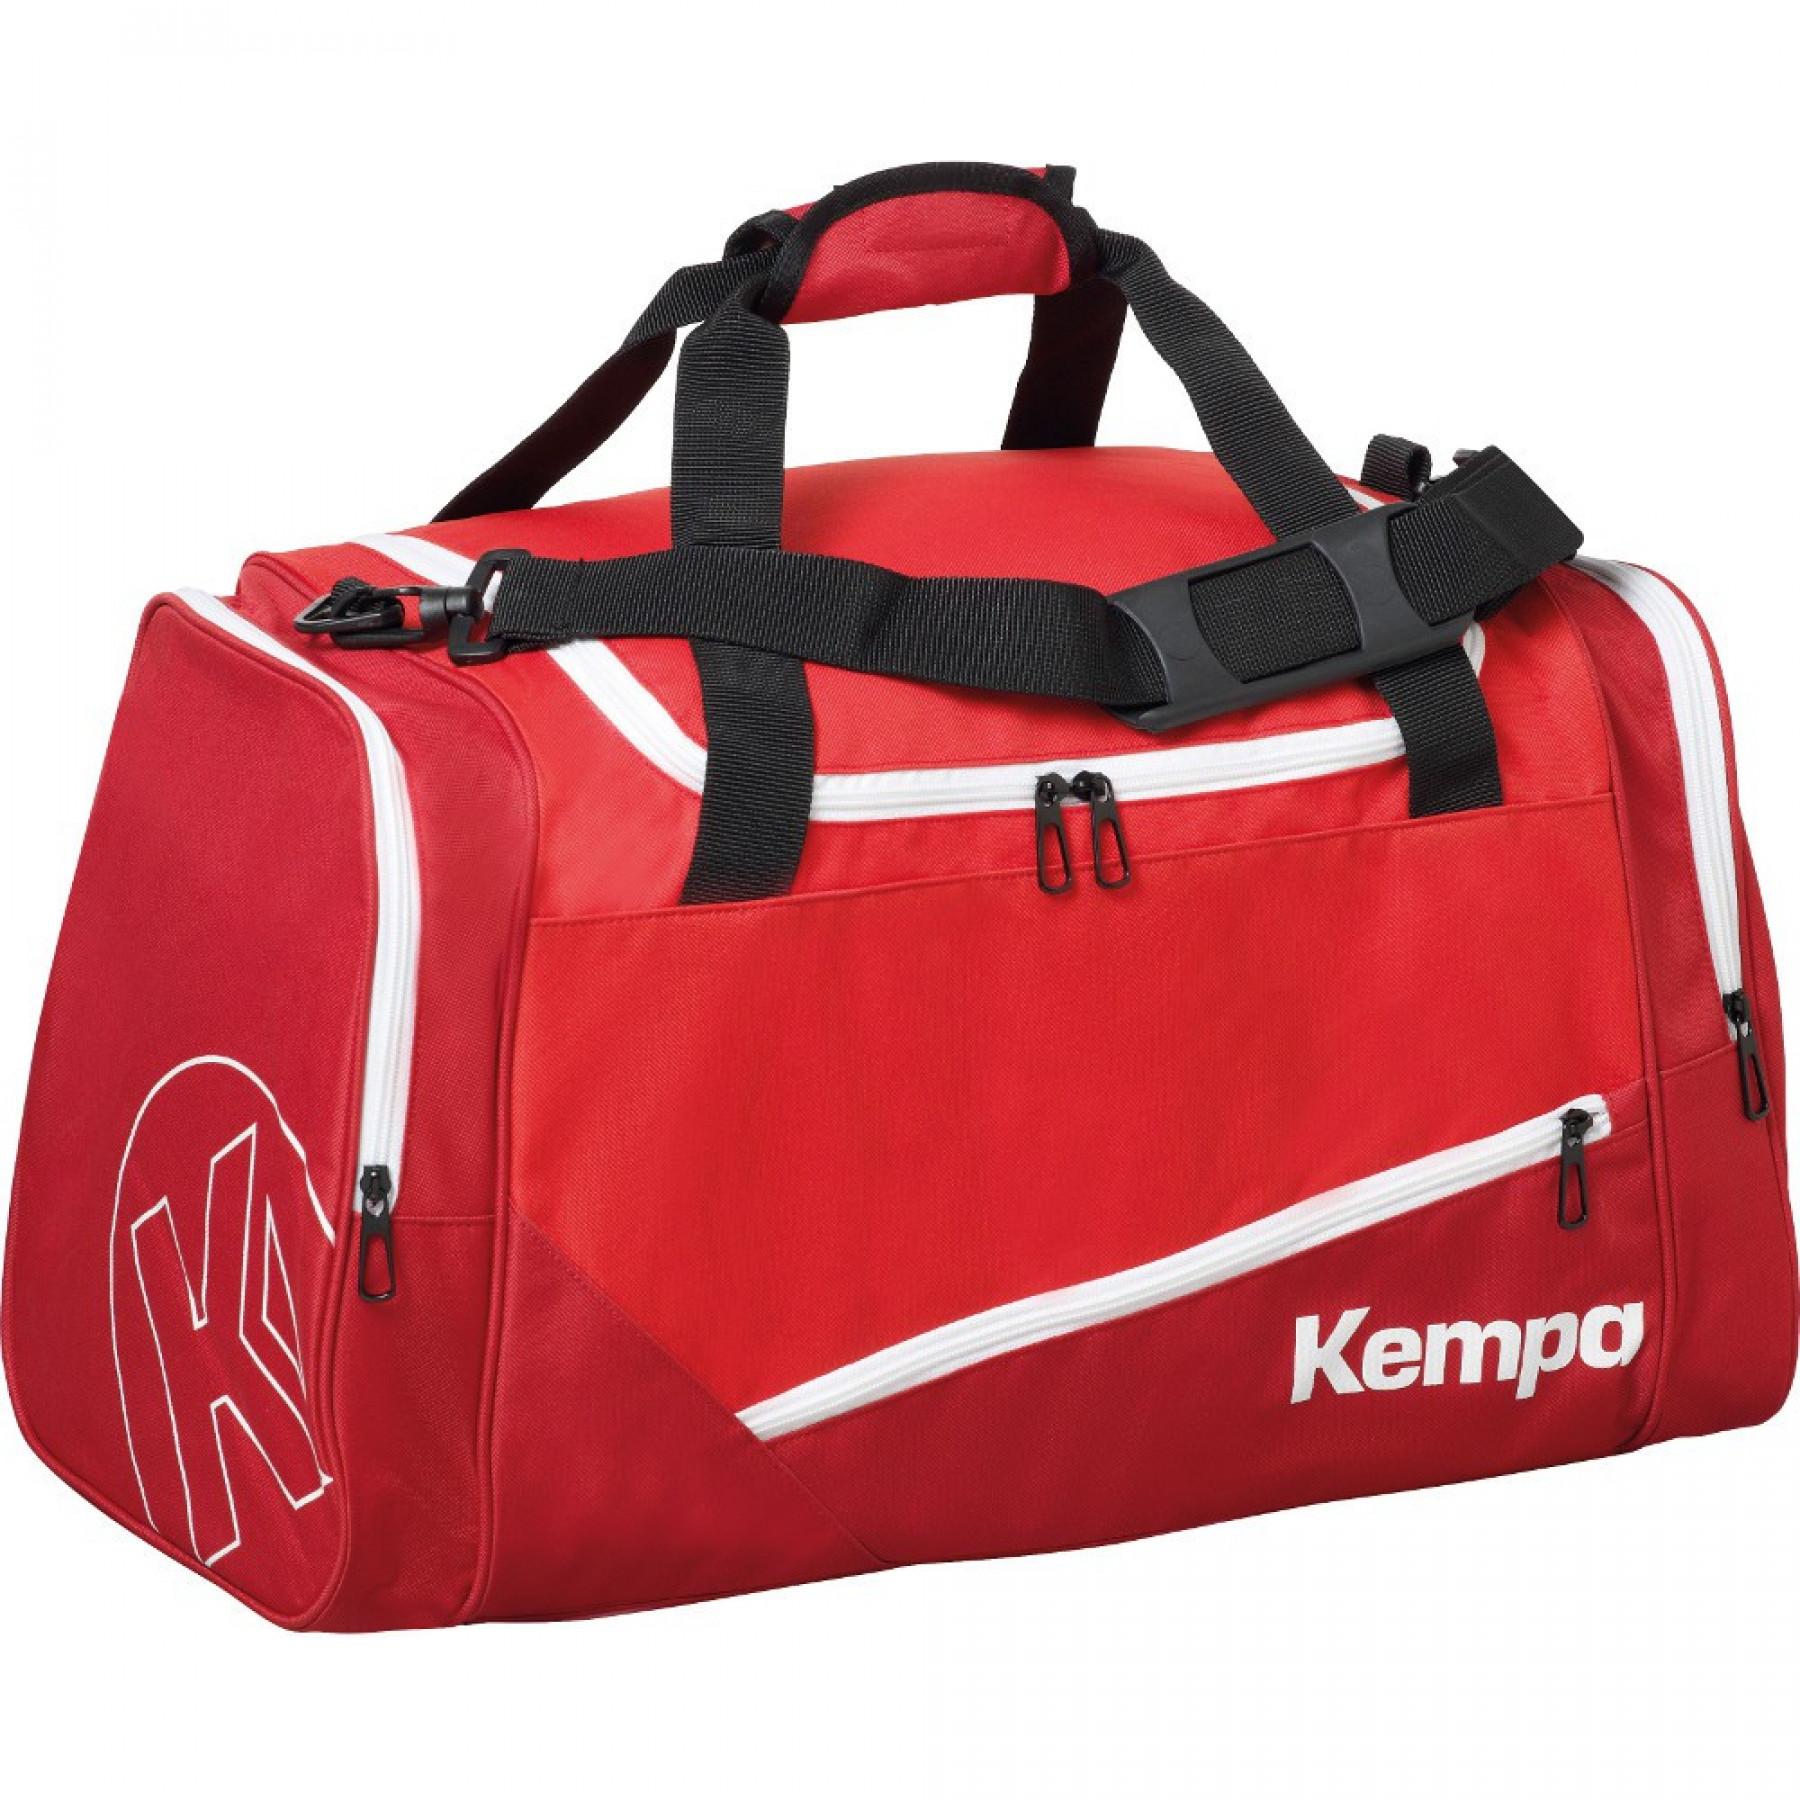 Sports bag Kempa 50 L